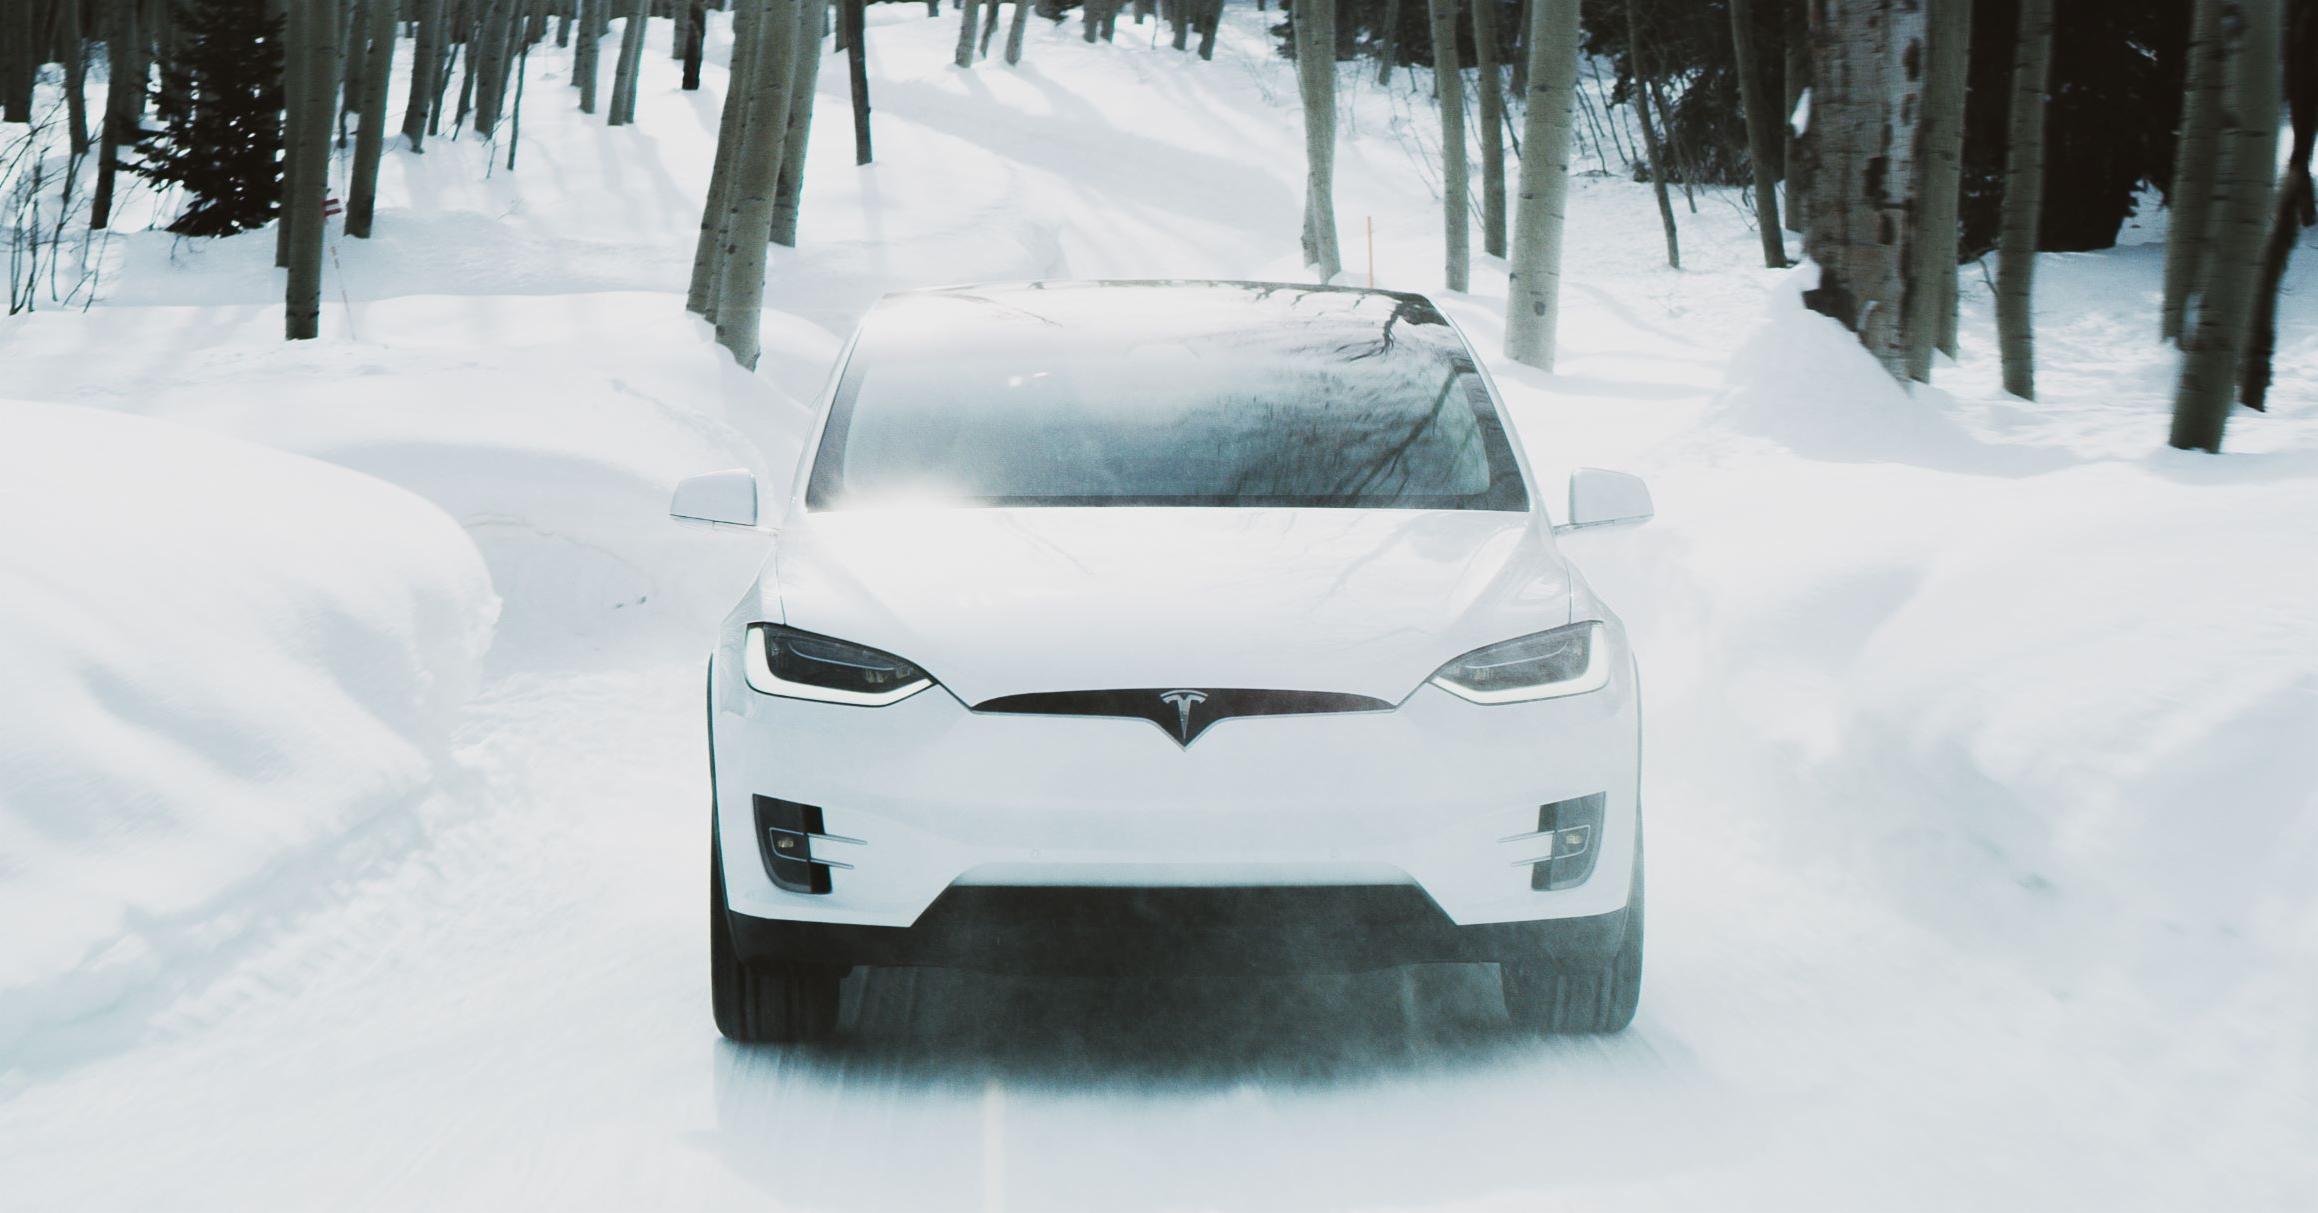 La Corea del Sud ha multato Tesla per 2,2 milioni di dollari per mancanza di informazioni sulla ridotta autonomia delle auto elettriche a temperature rigide